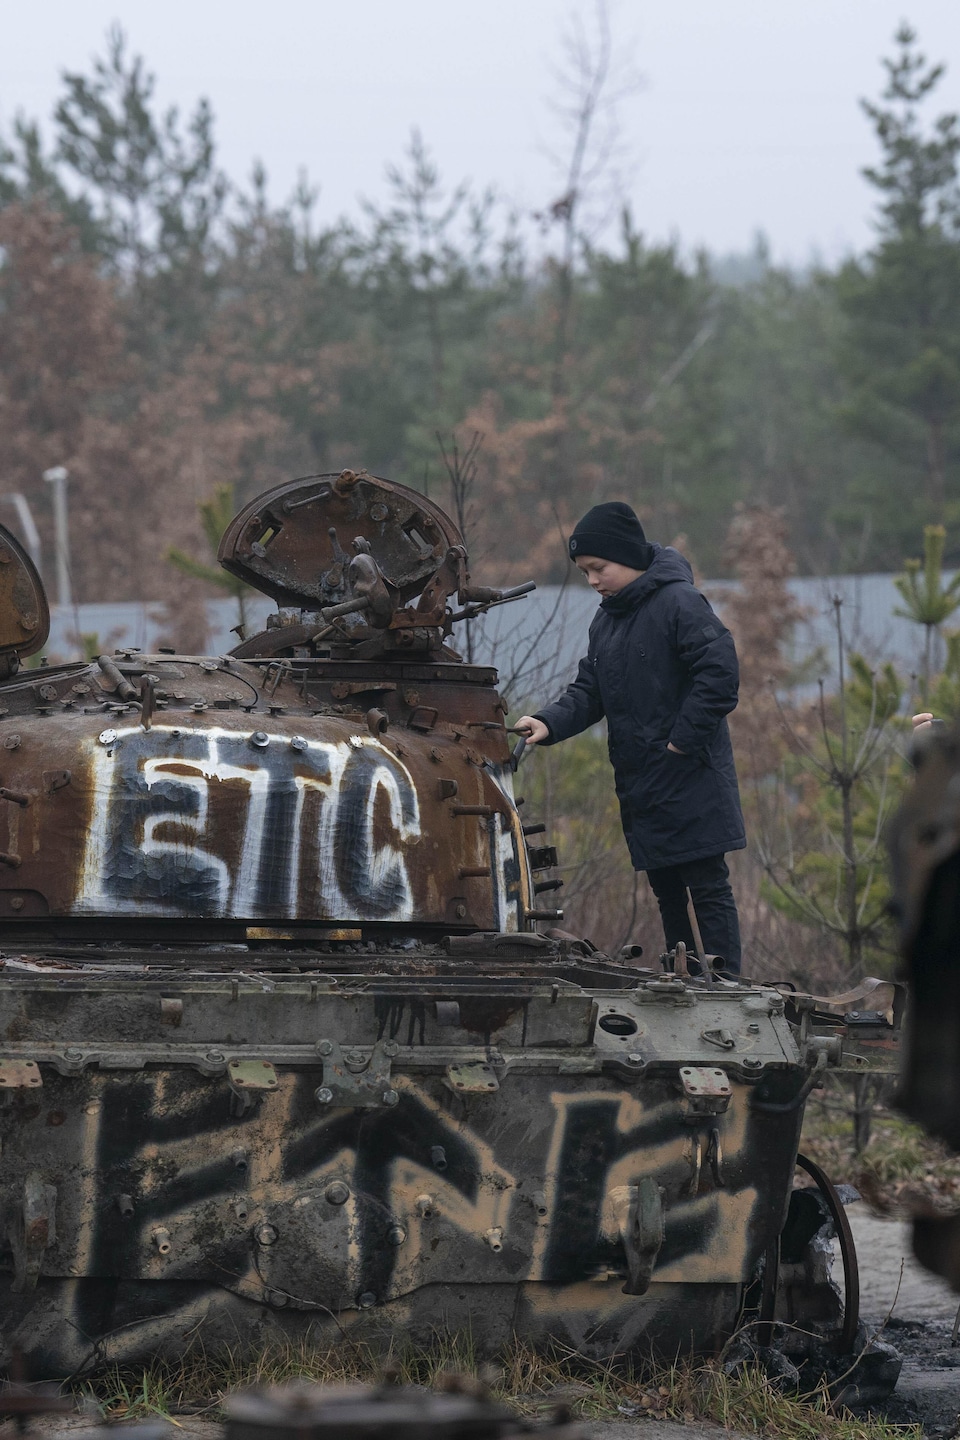  Un enfant sur la carcasse d'un tank russe.